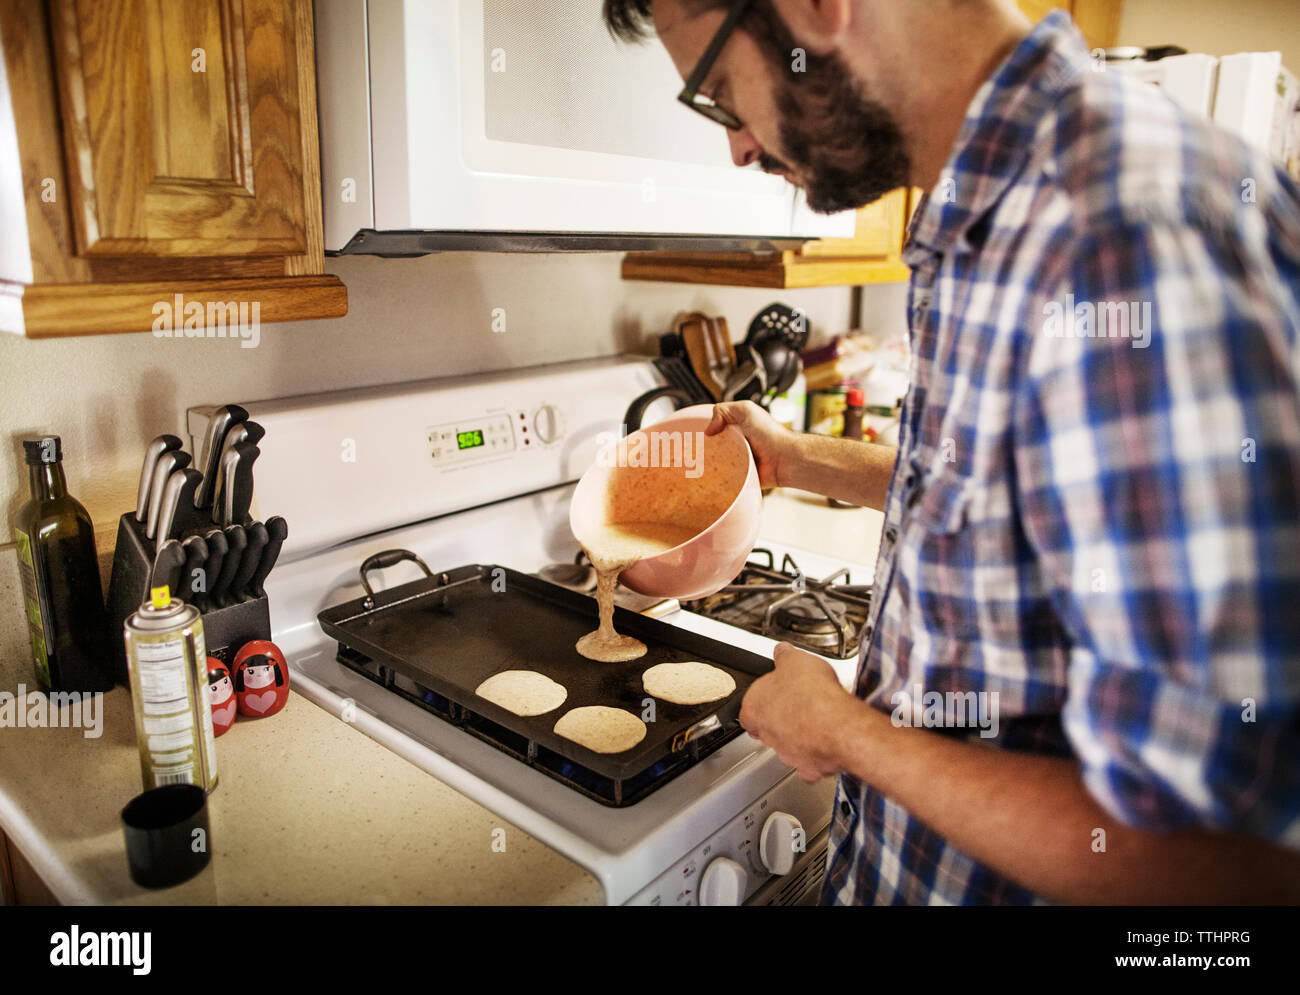 Man pouring pan cake batter on baking sheet at home Stock Photo